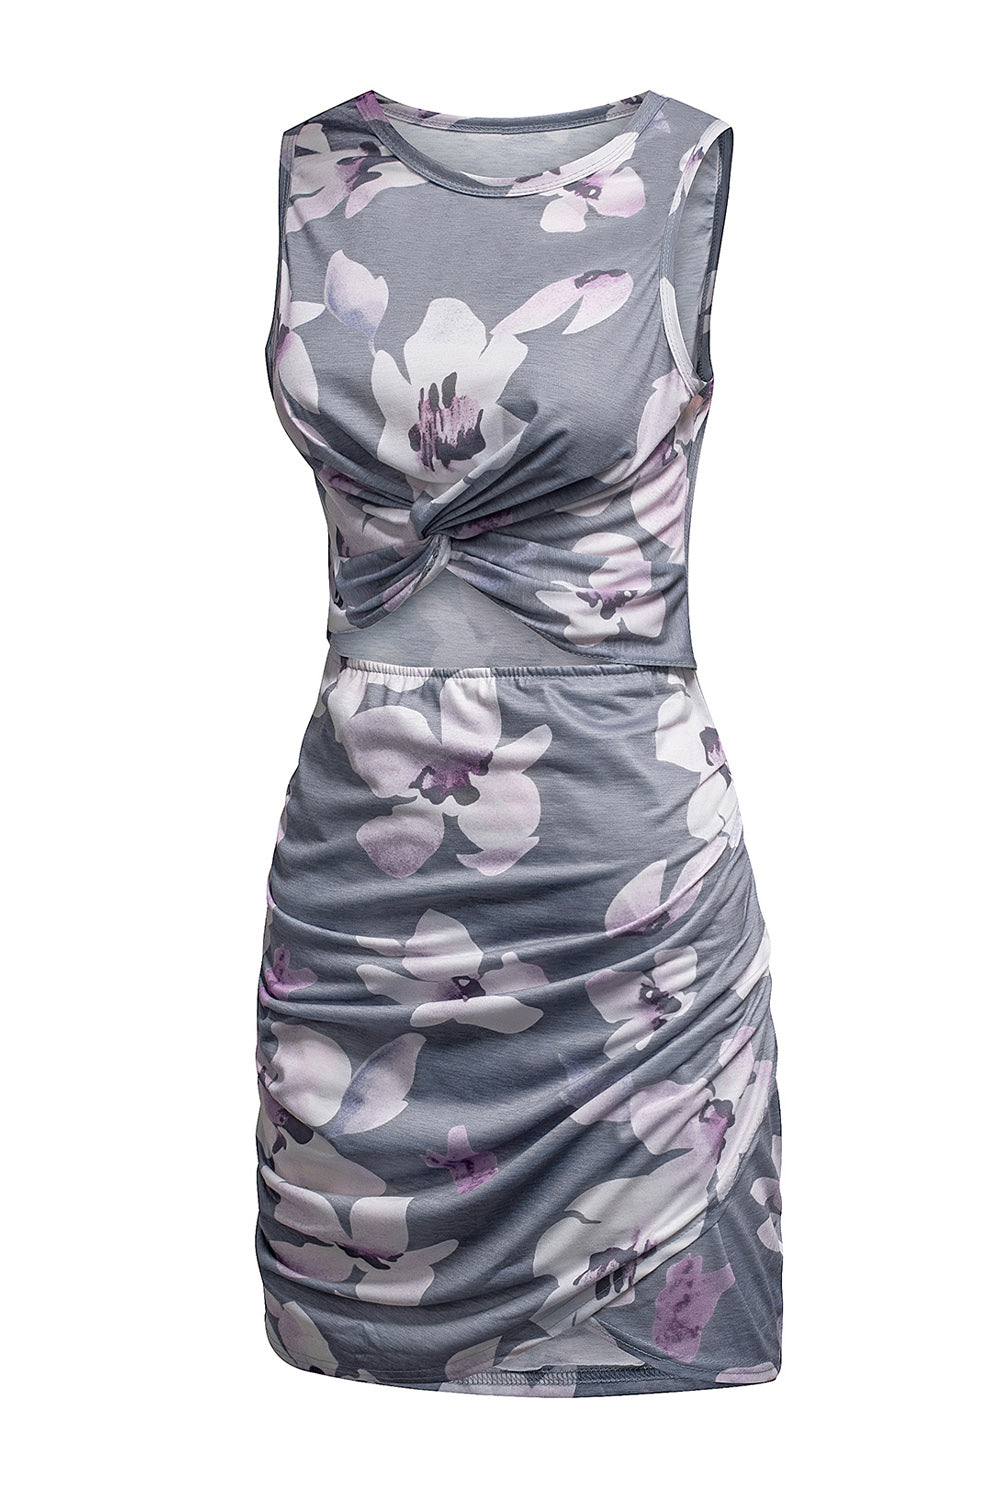 Floral Print Hollow Out Wrap Tie Mini Dress Mini Dresses JT's Designer Fashion